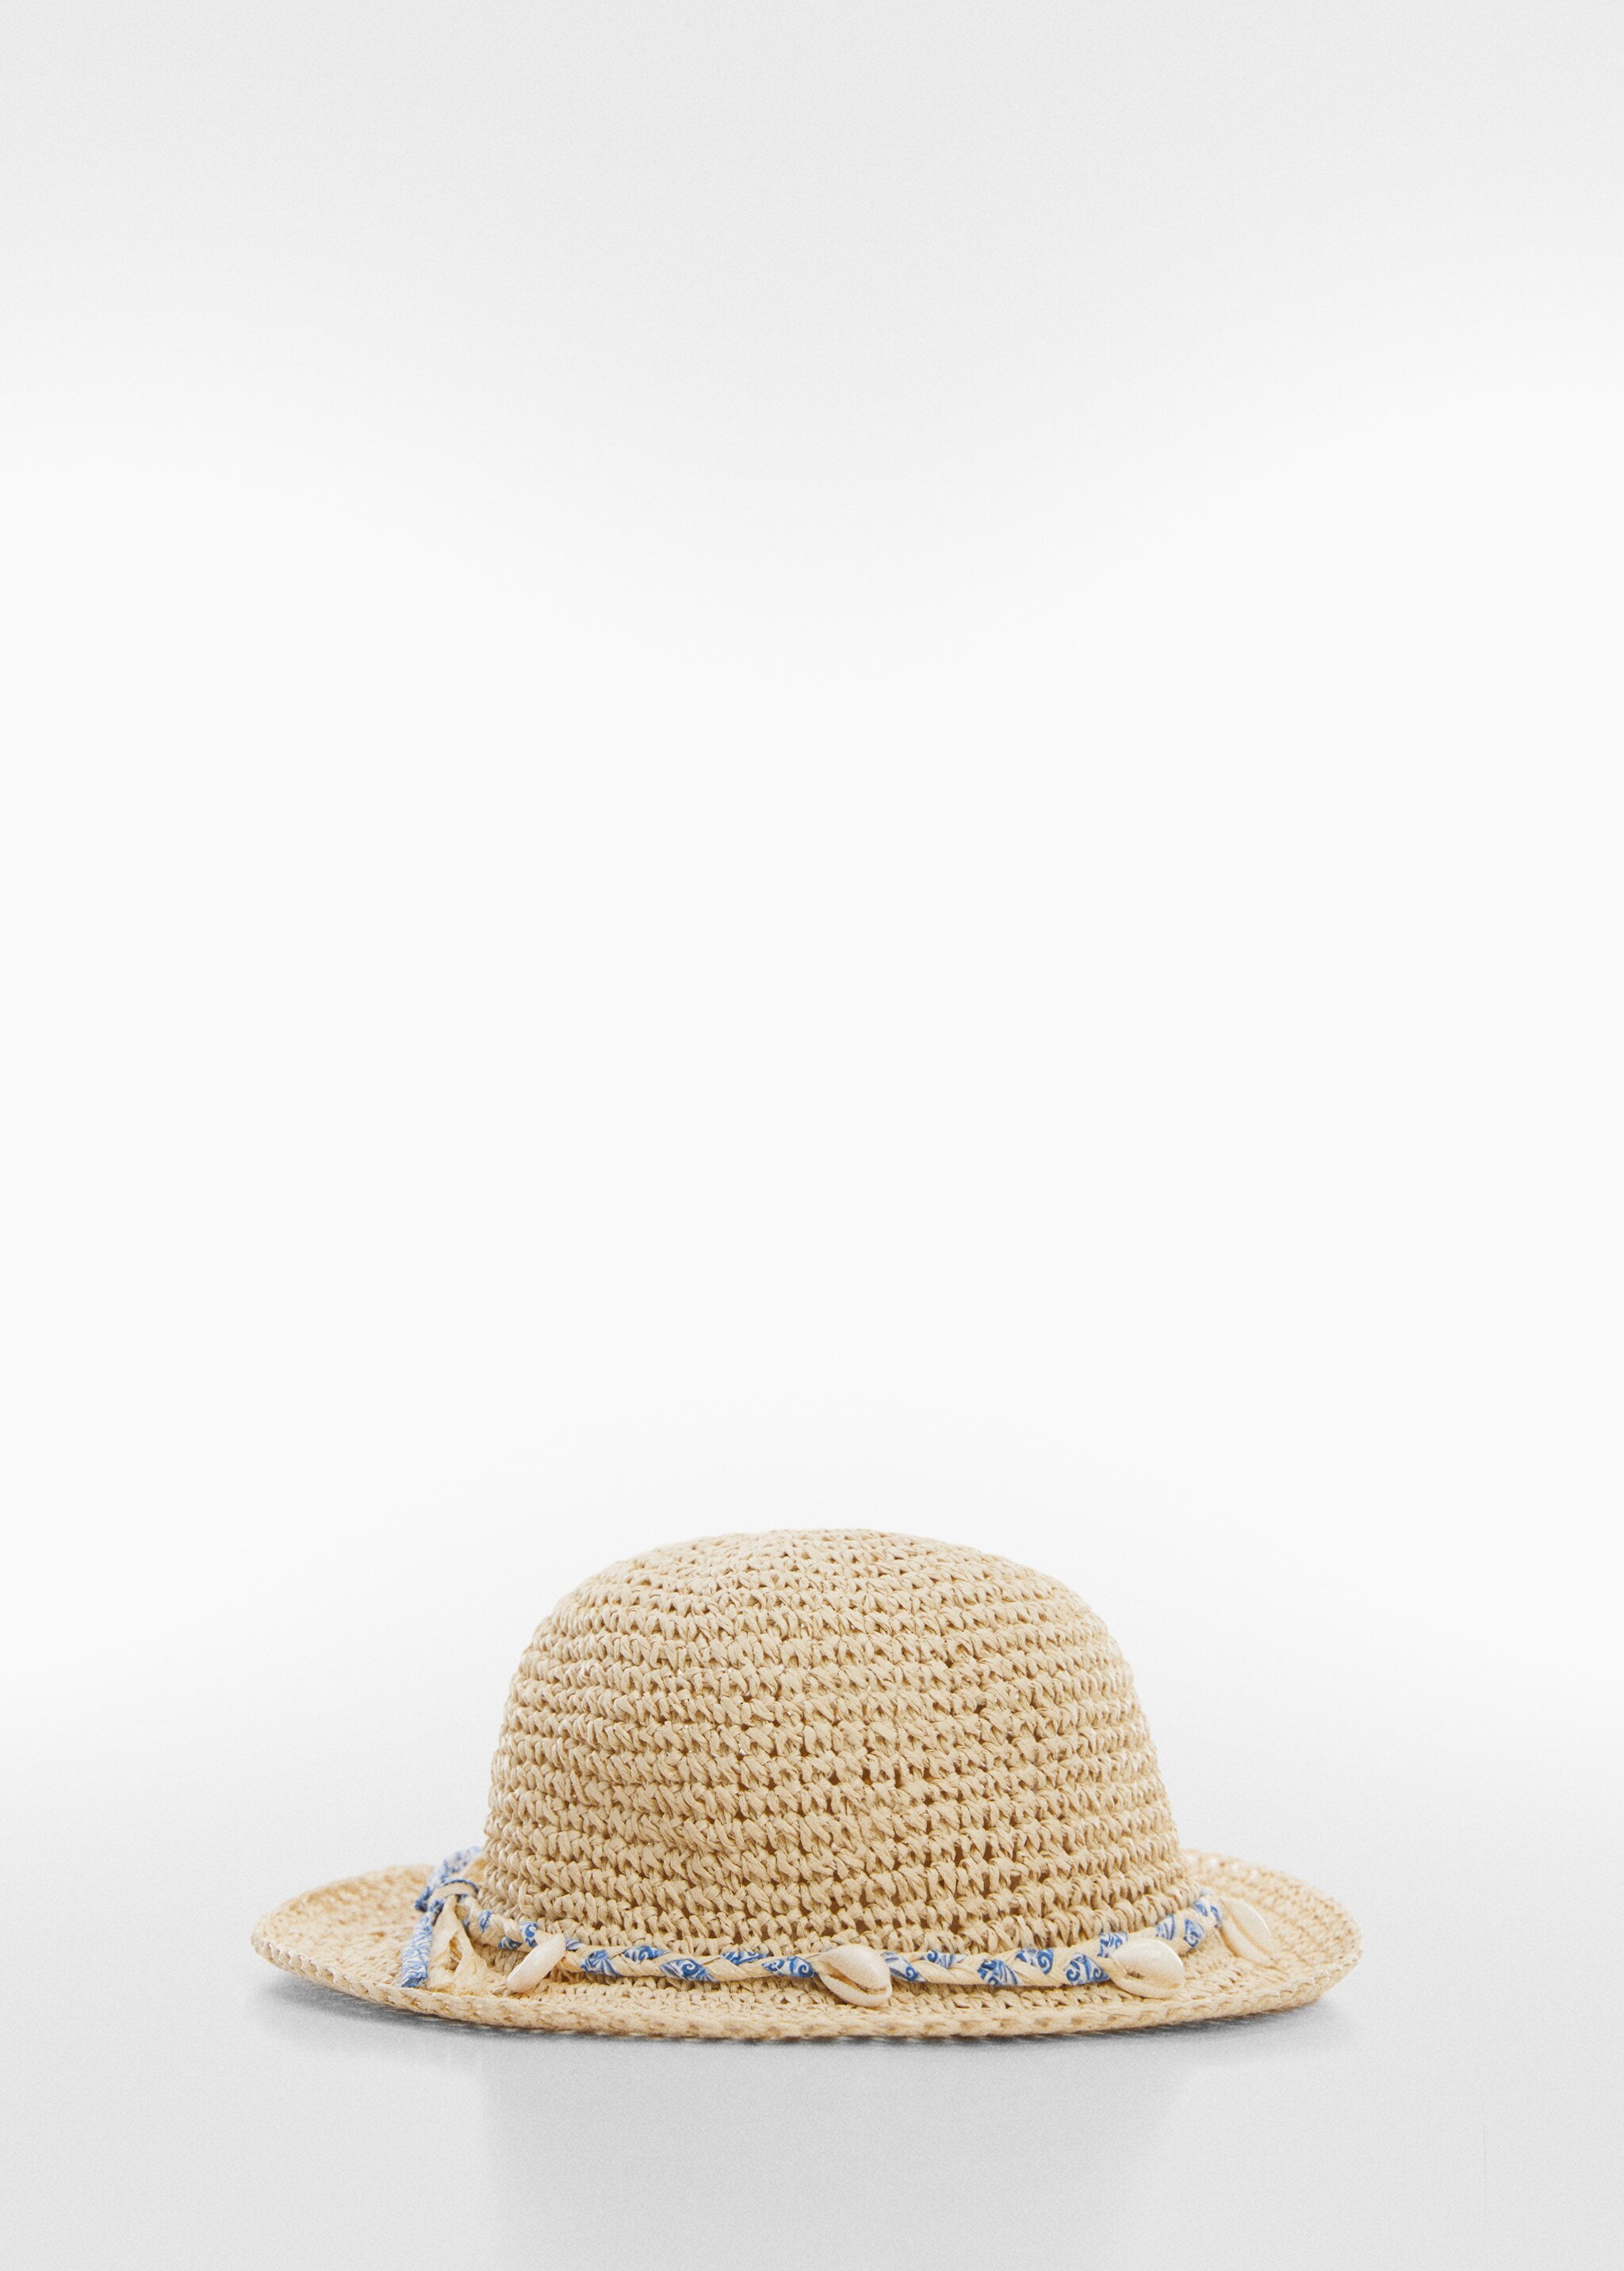 Sombrero paja conchas - Artículo sin modelo